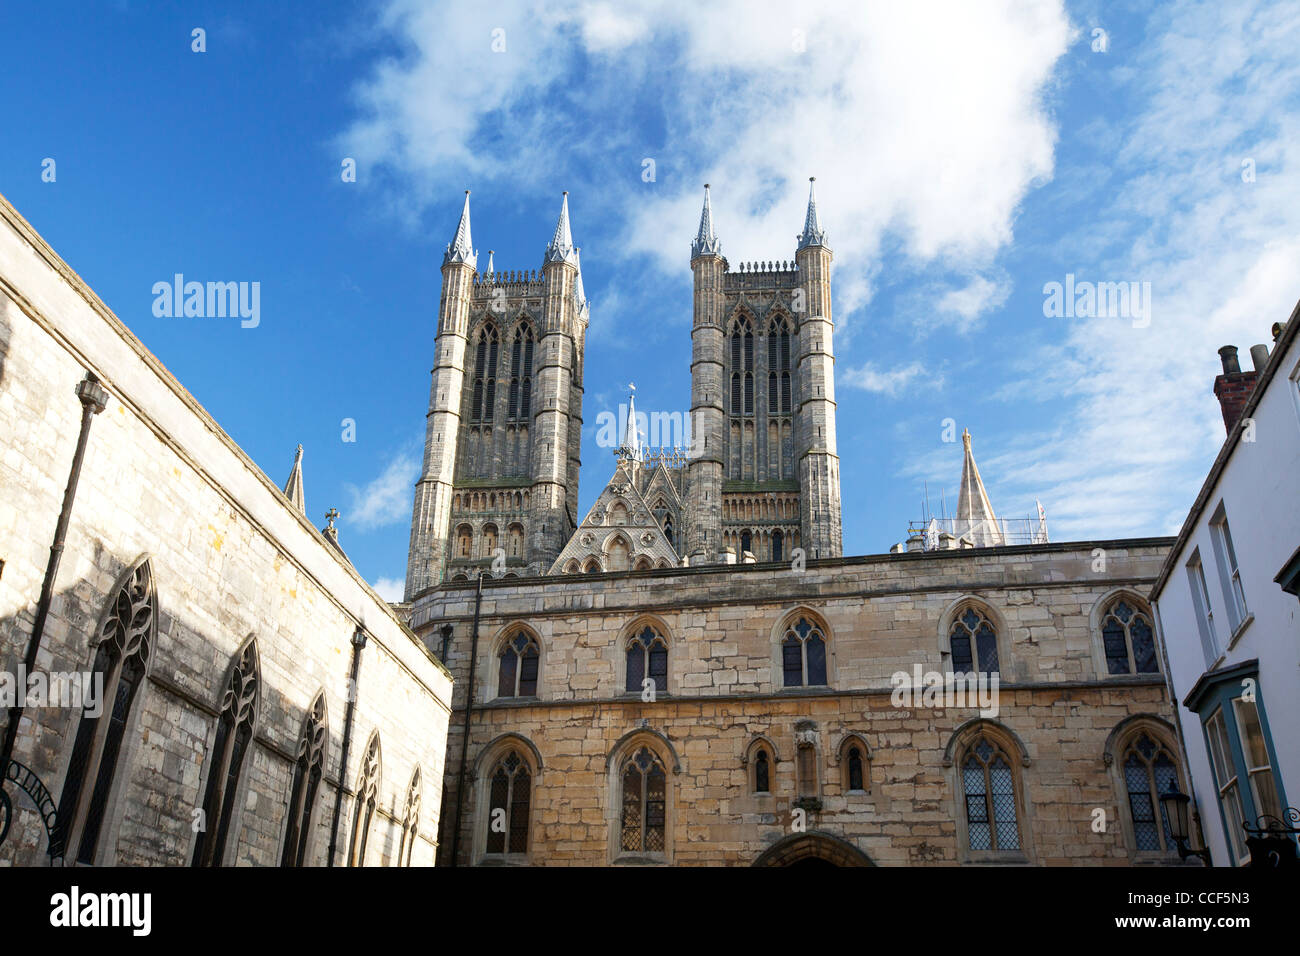 La Ville de Lincoln, Lincolnshire, Angleterre, la cathédrale de Lincoln, monument historique tours gothique médiévale Banque D'Images